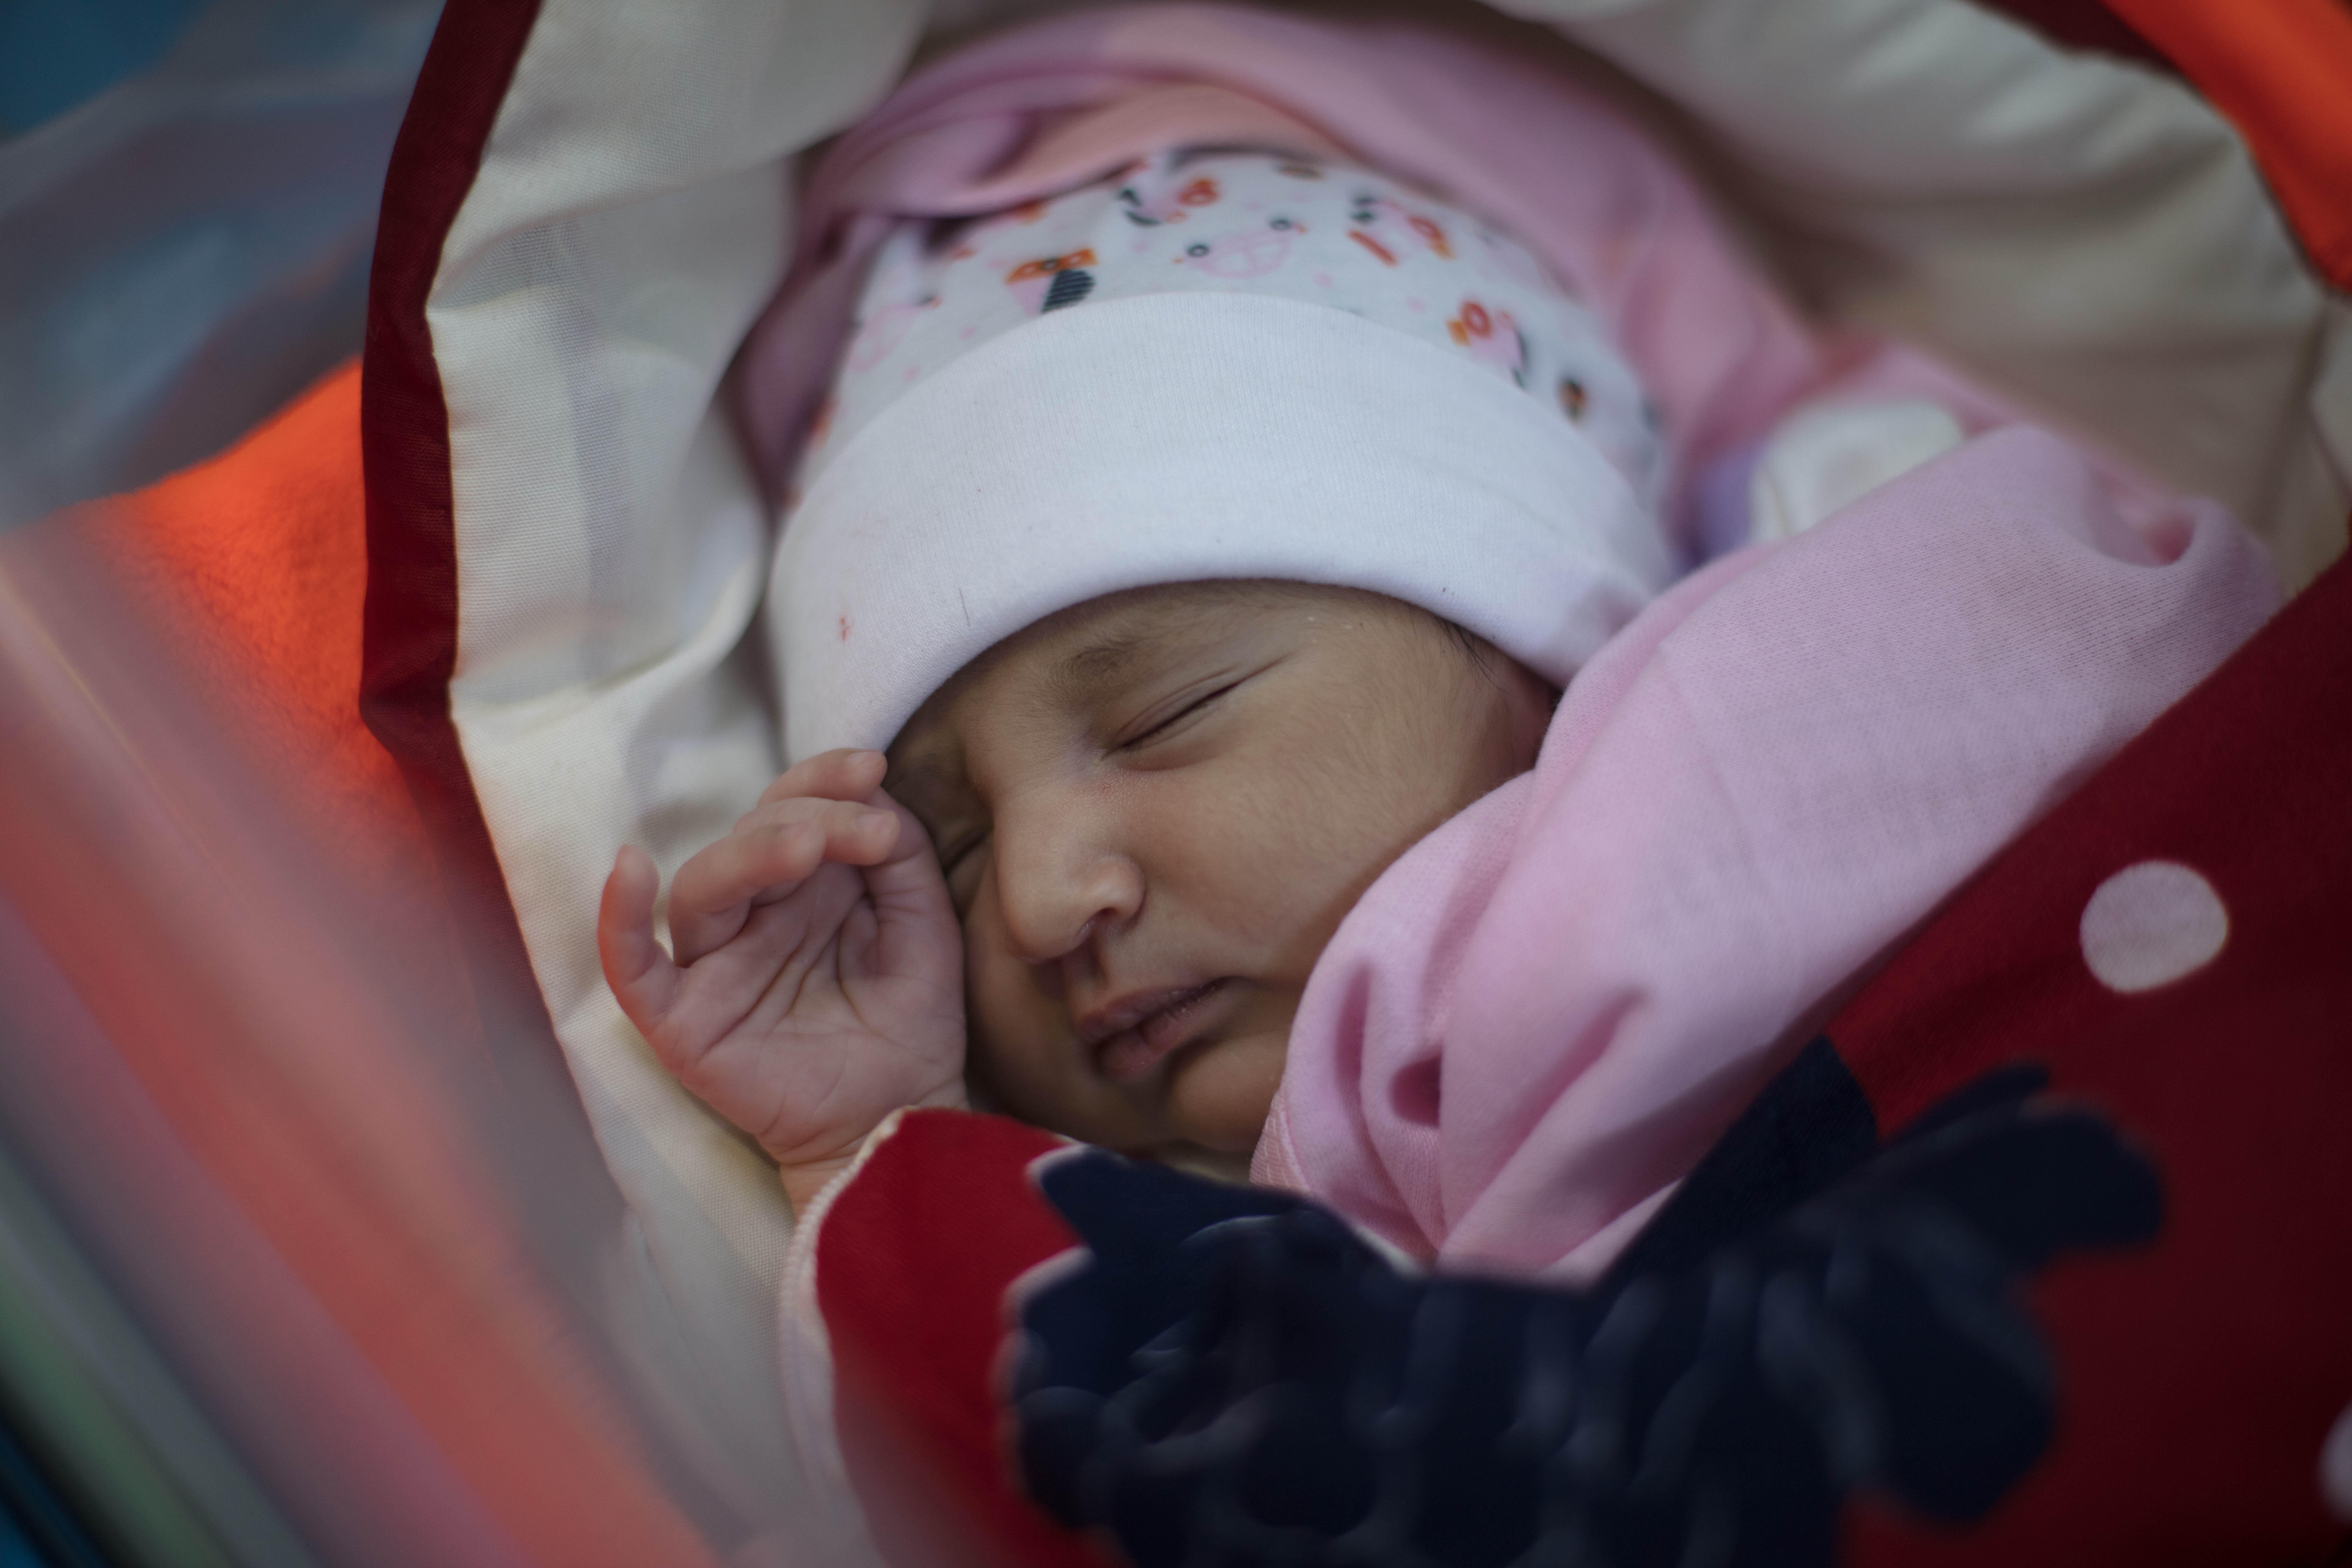 Newborn baby Mera sleeps in an IRC health center in Yemen.